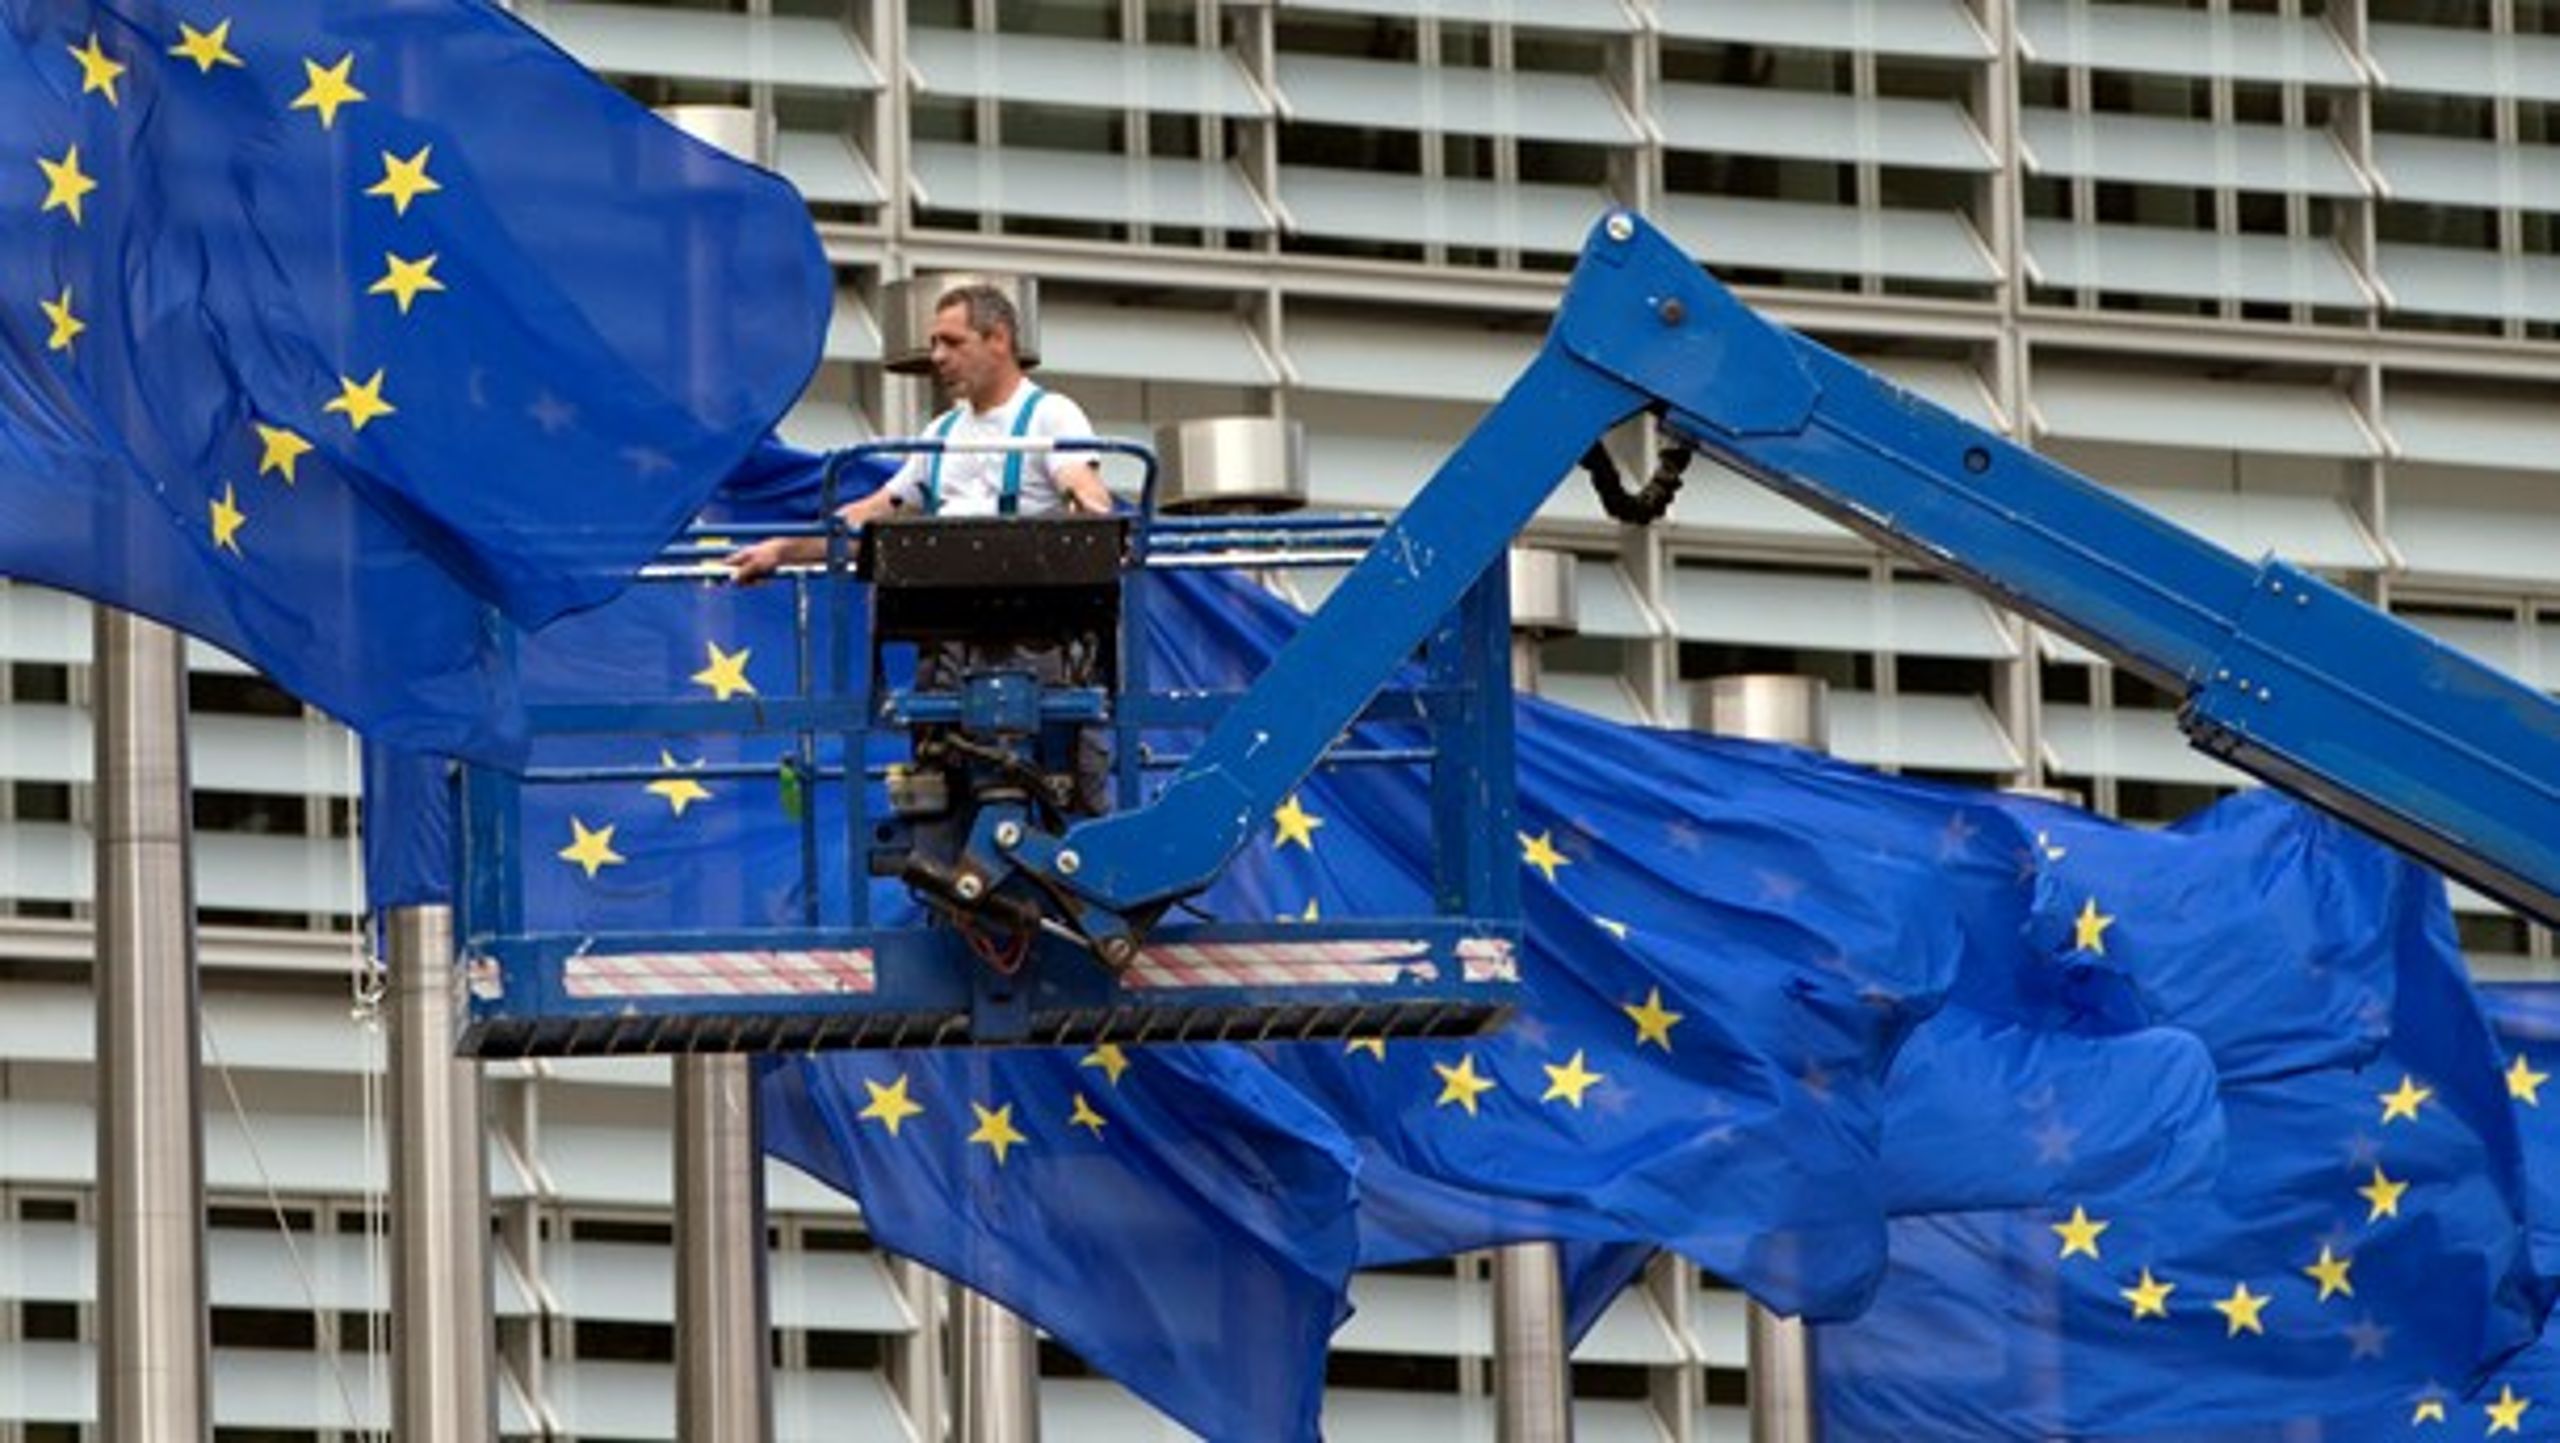 Det danske medlemskab af EU luner på bundlinjen og giver samtidig mulighed for at påvirke store dagsordener som migration, skattesnyd og terrorbekæmpelse, skriver Jan Høst Schmidt. På billedet ses en arbejder, der justerer flagene foran kommissionsbygningen i Bruxelles.&nbsp;